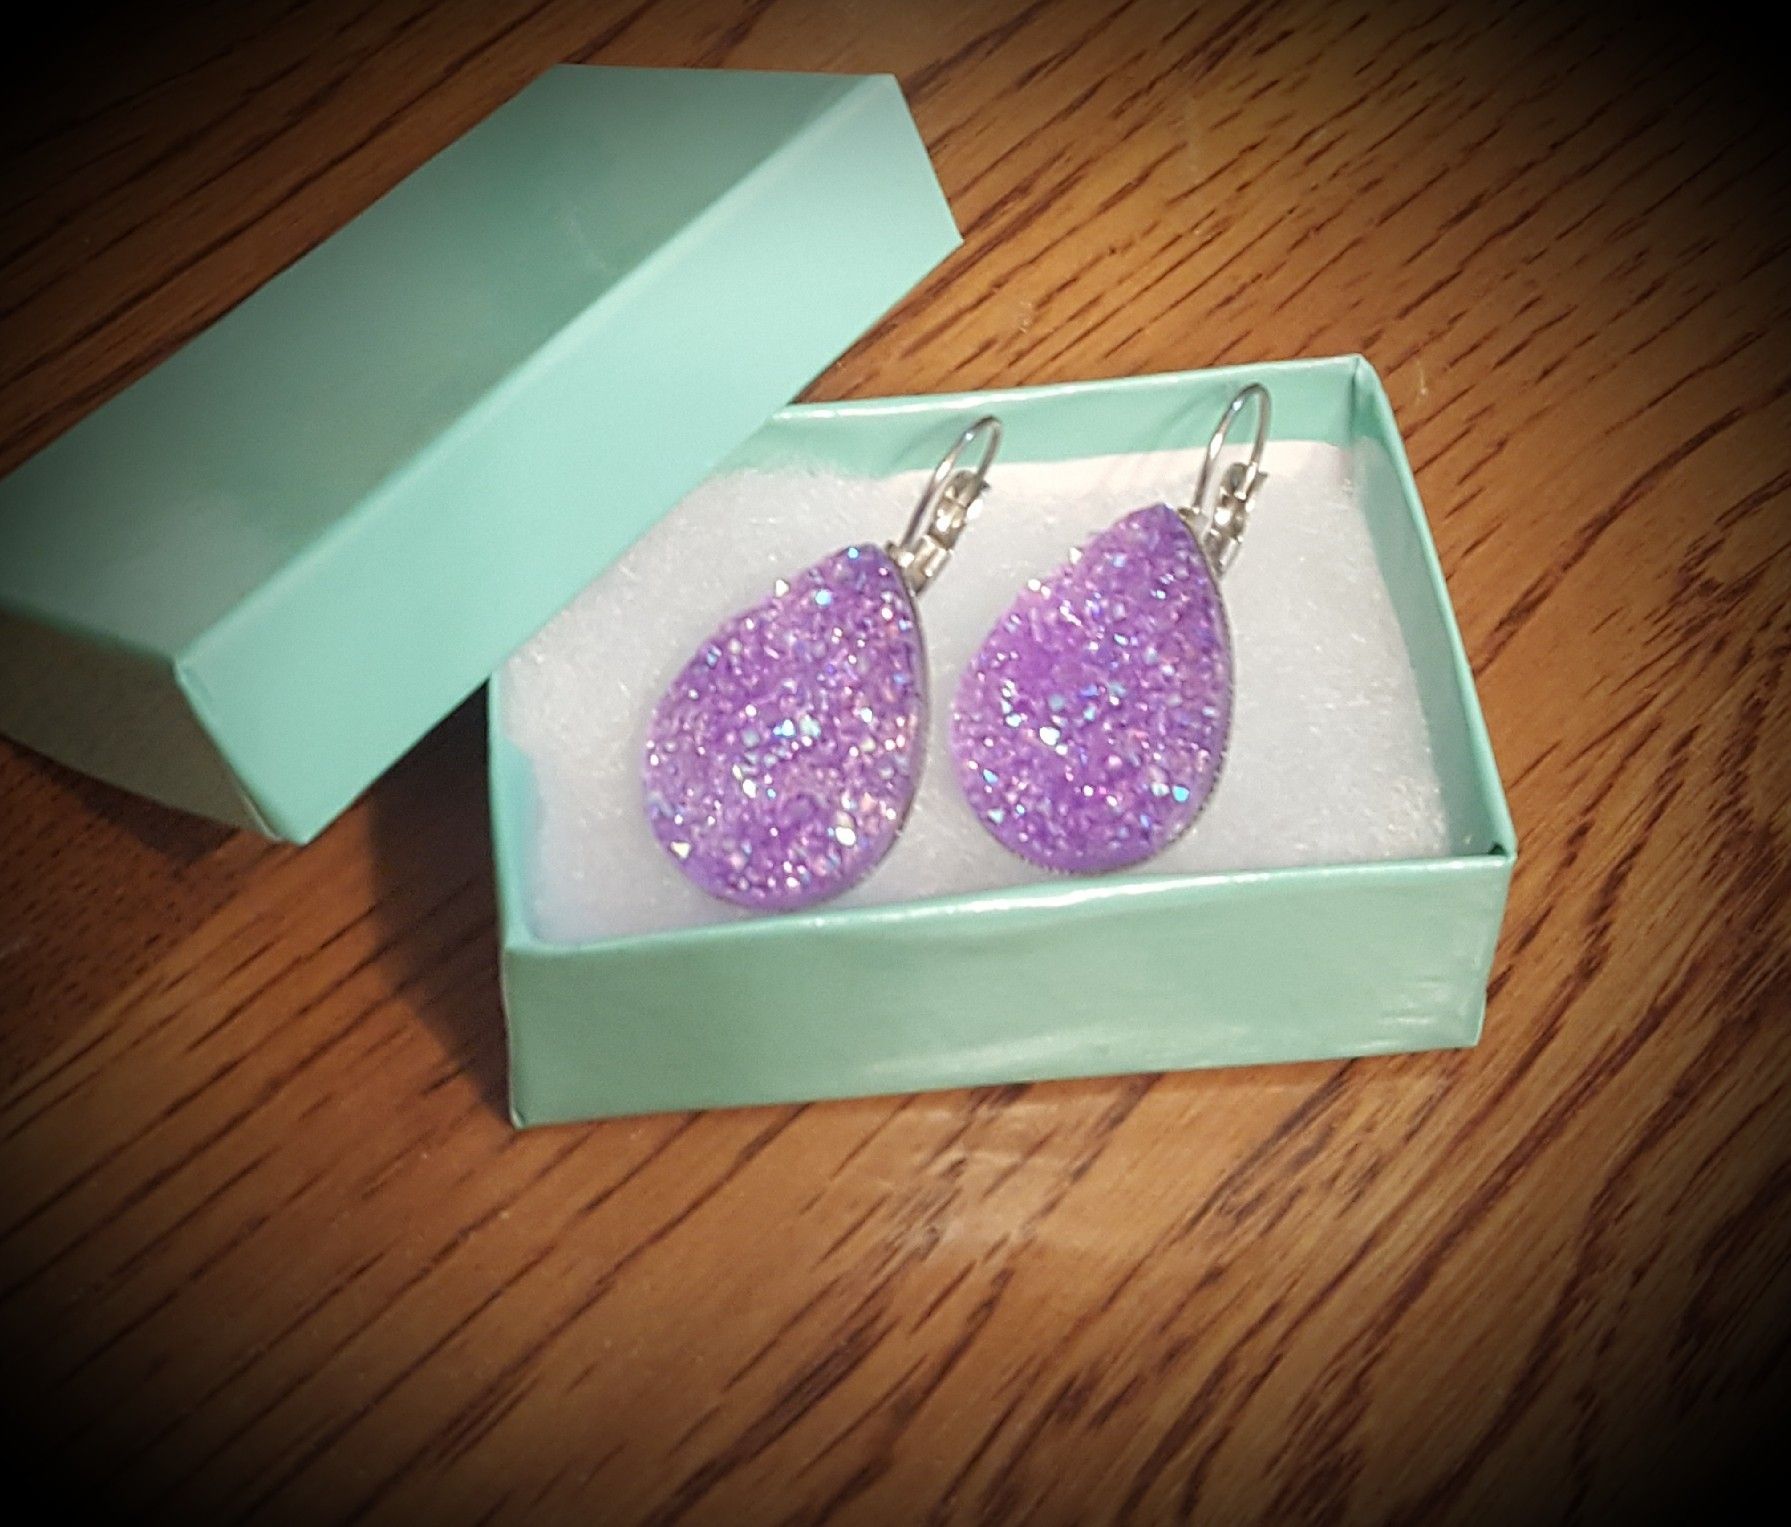 Purple Druzy Earrings